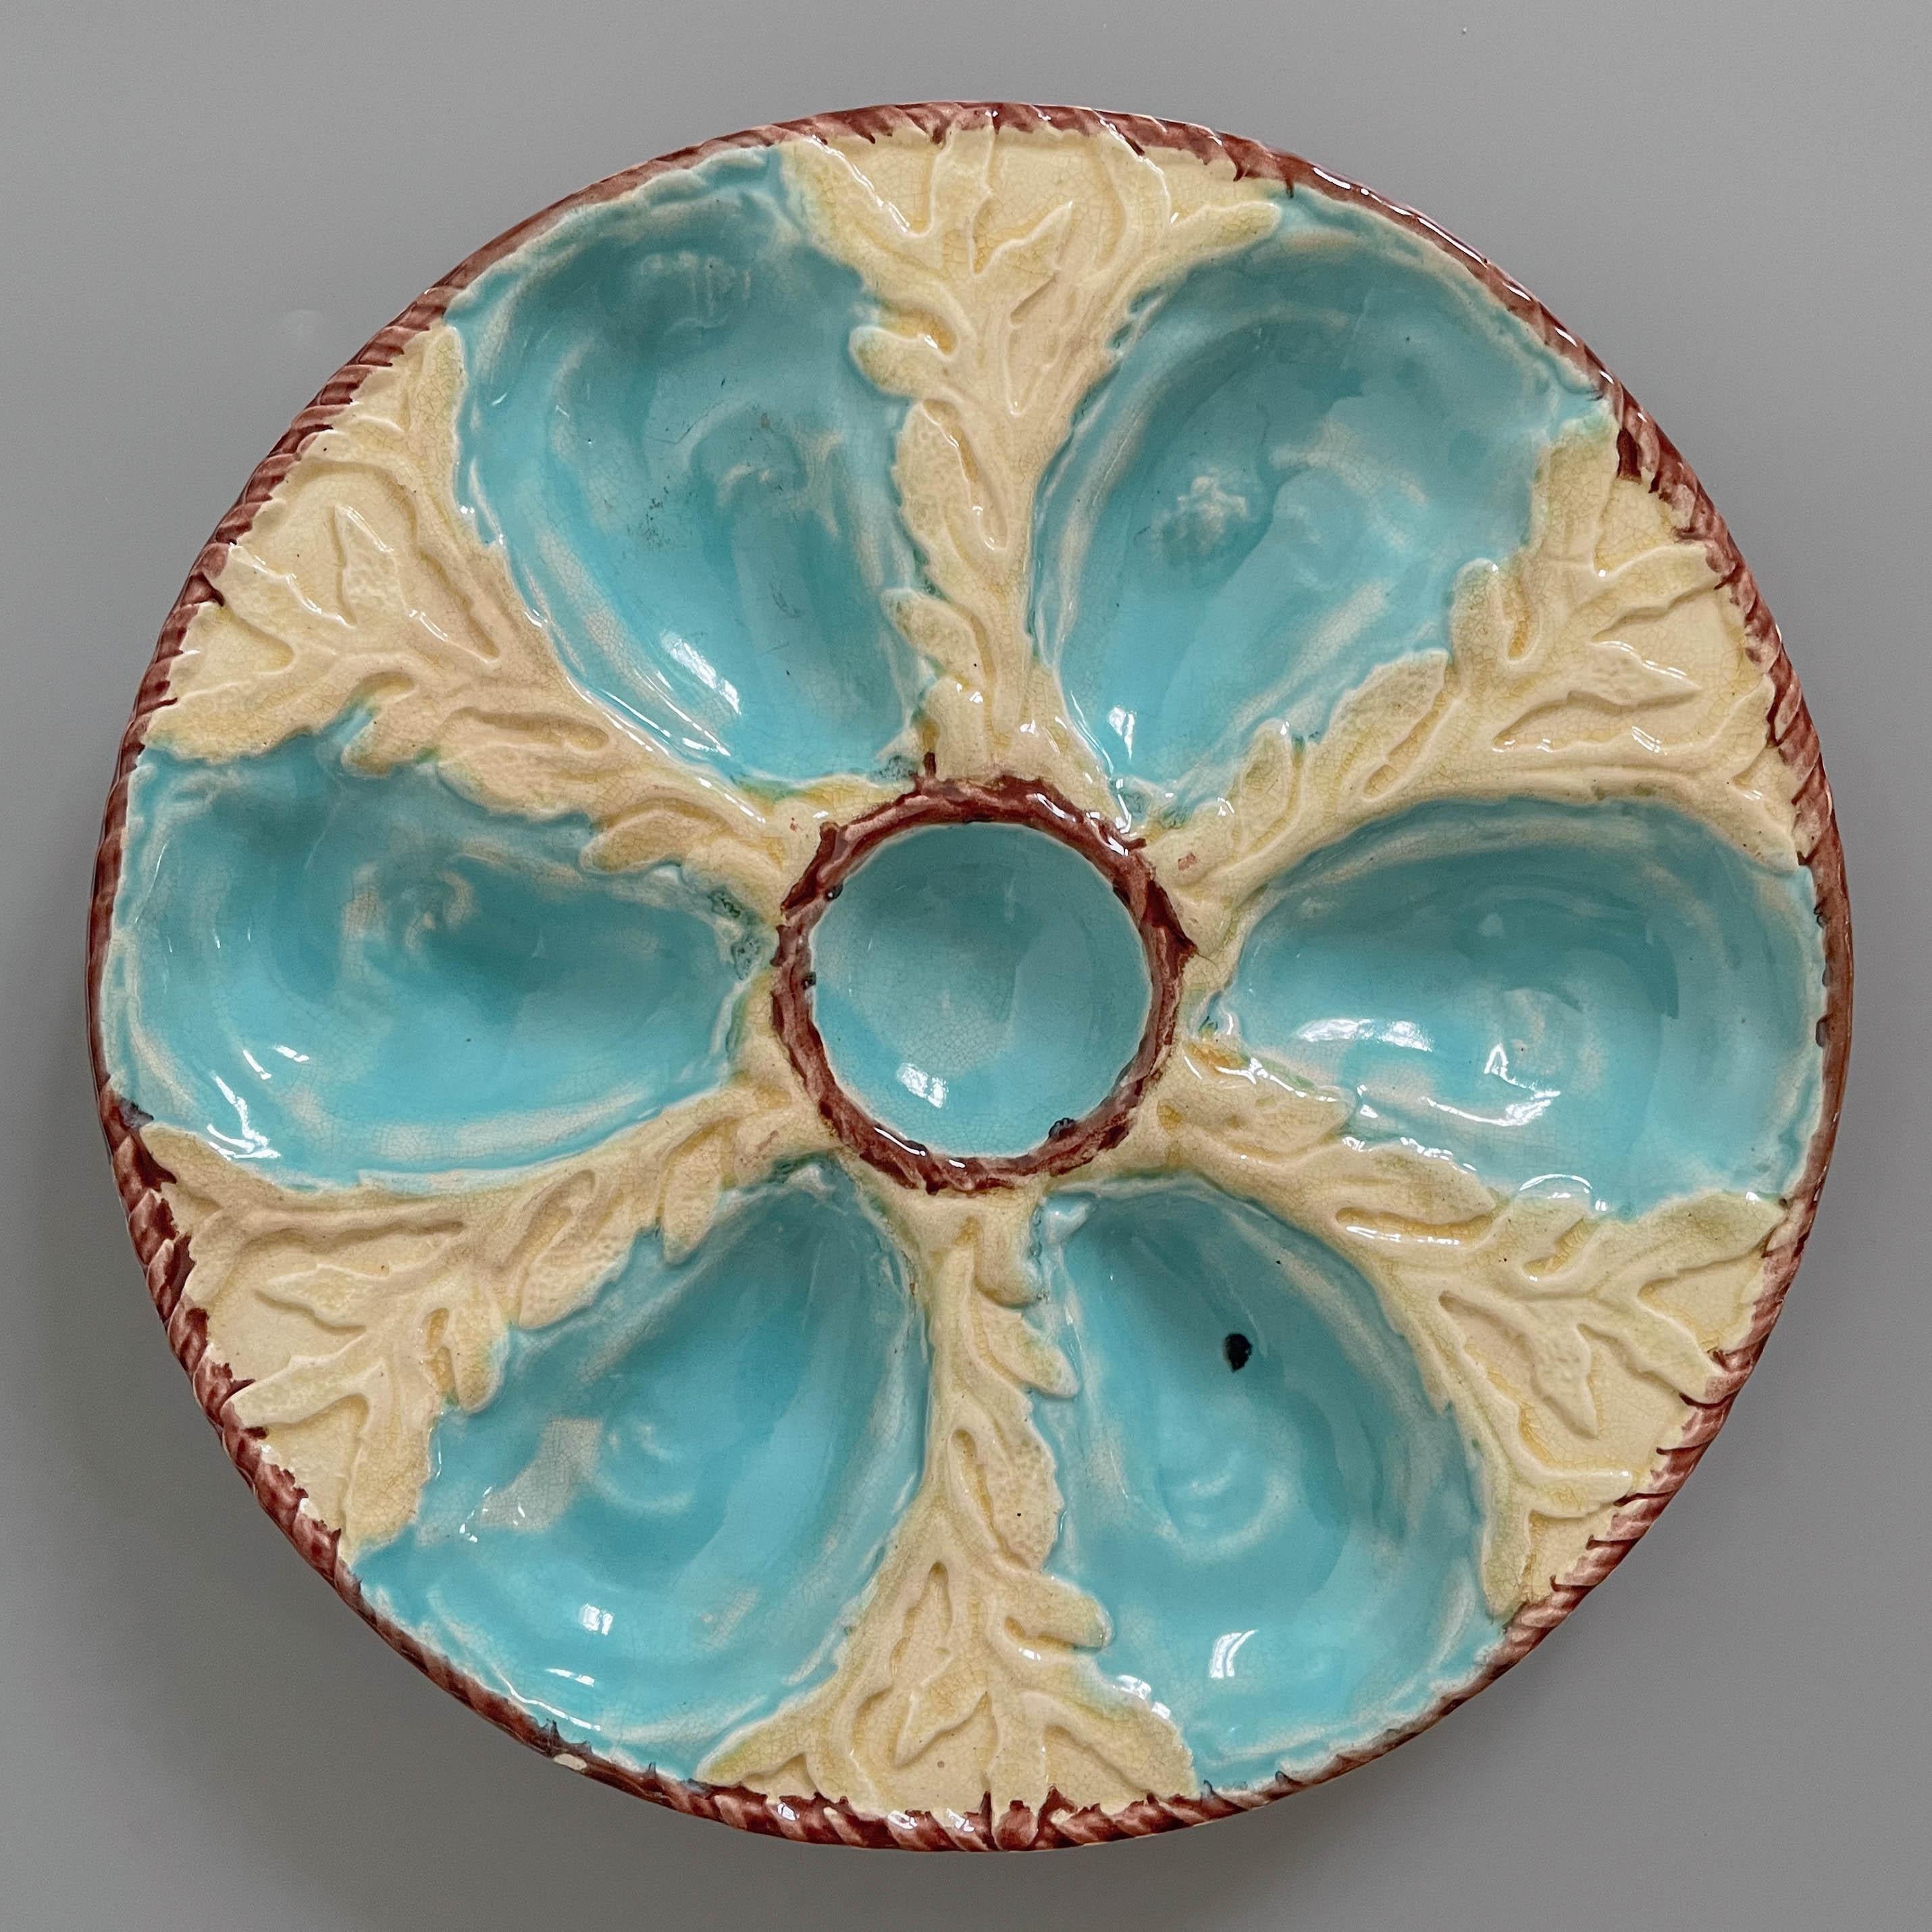 Assiette à huîtres en majolique émaillée anglaise du XIXe siècle, avec six puits à huîtres bleu turquoise entourant un puits central pour la sauce, sur un fond jaune avec relief d'algues. Une bordure de corde nautique brune entoure le puits central